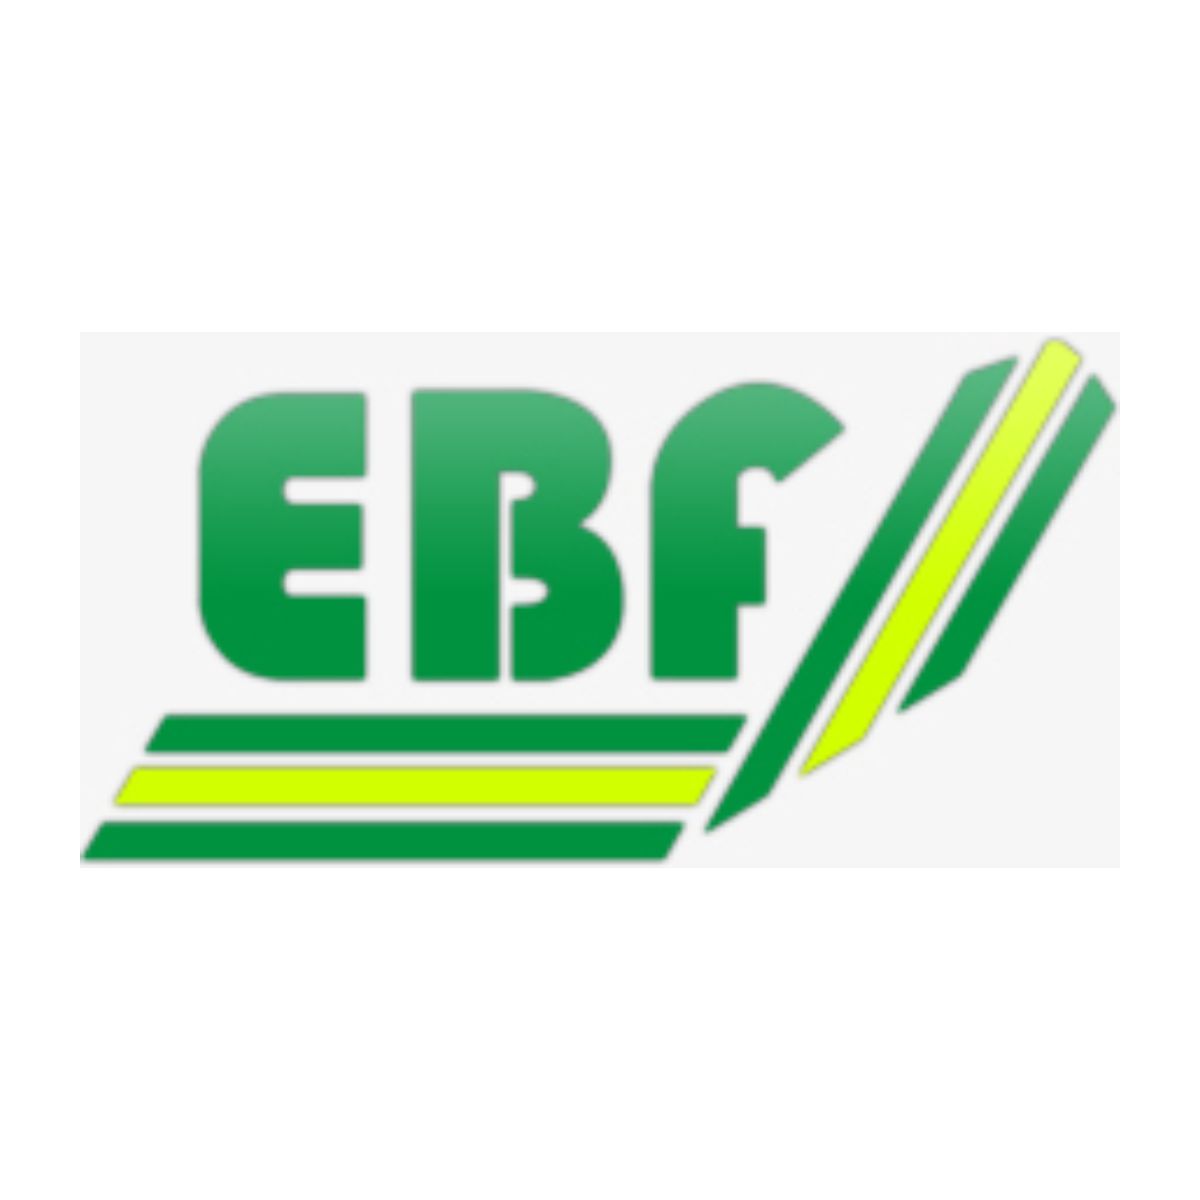 EBF - Empresa Brasileira de Fundidos